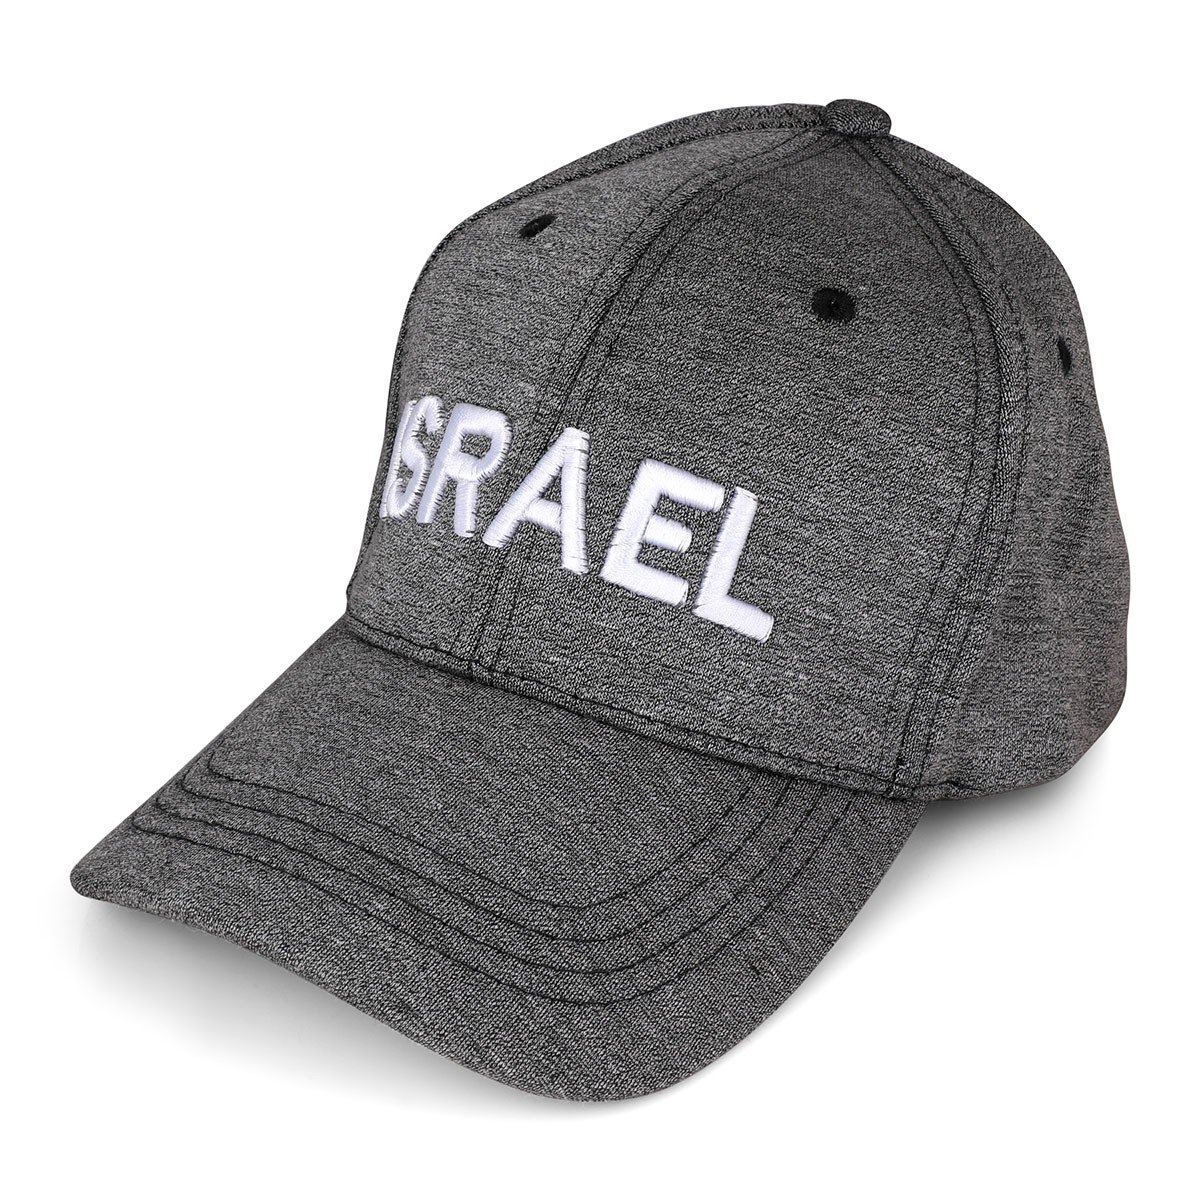 Israel Baseball Cap (Gray) - 1